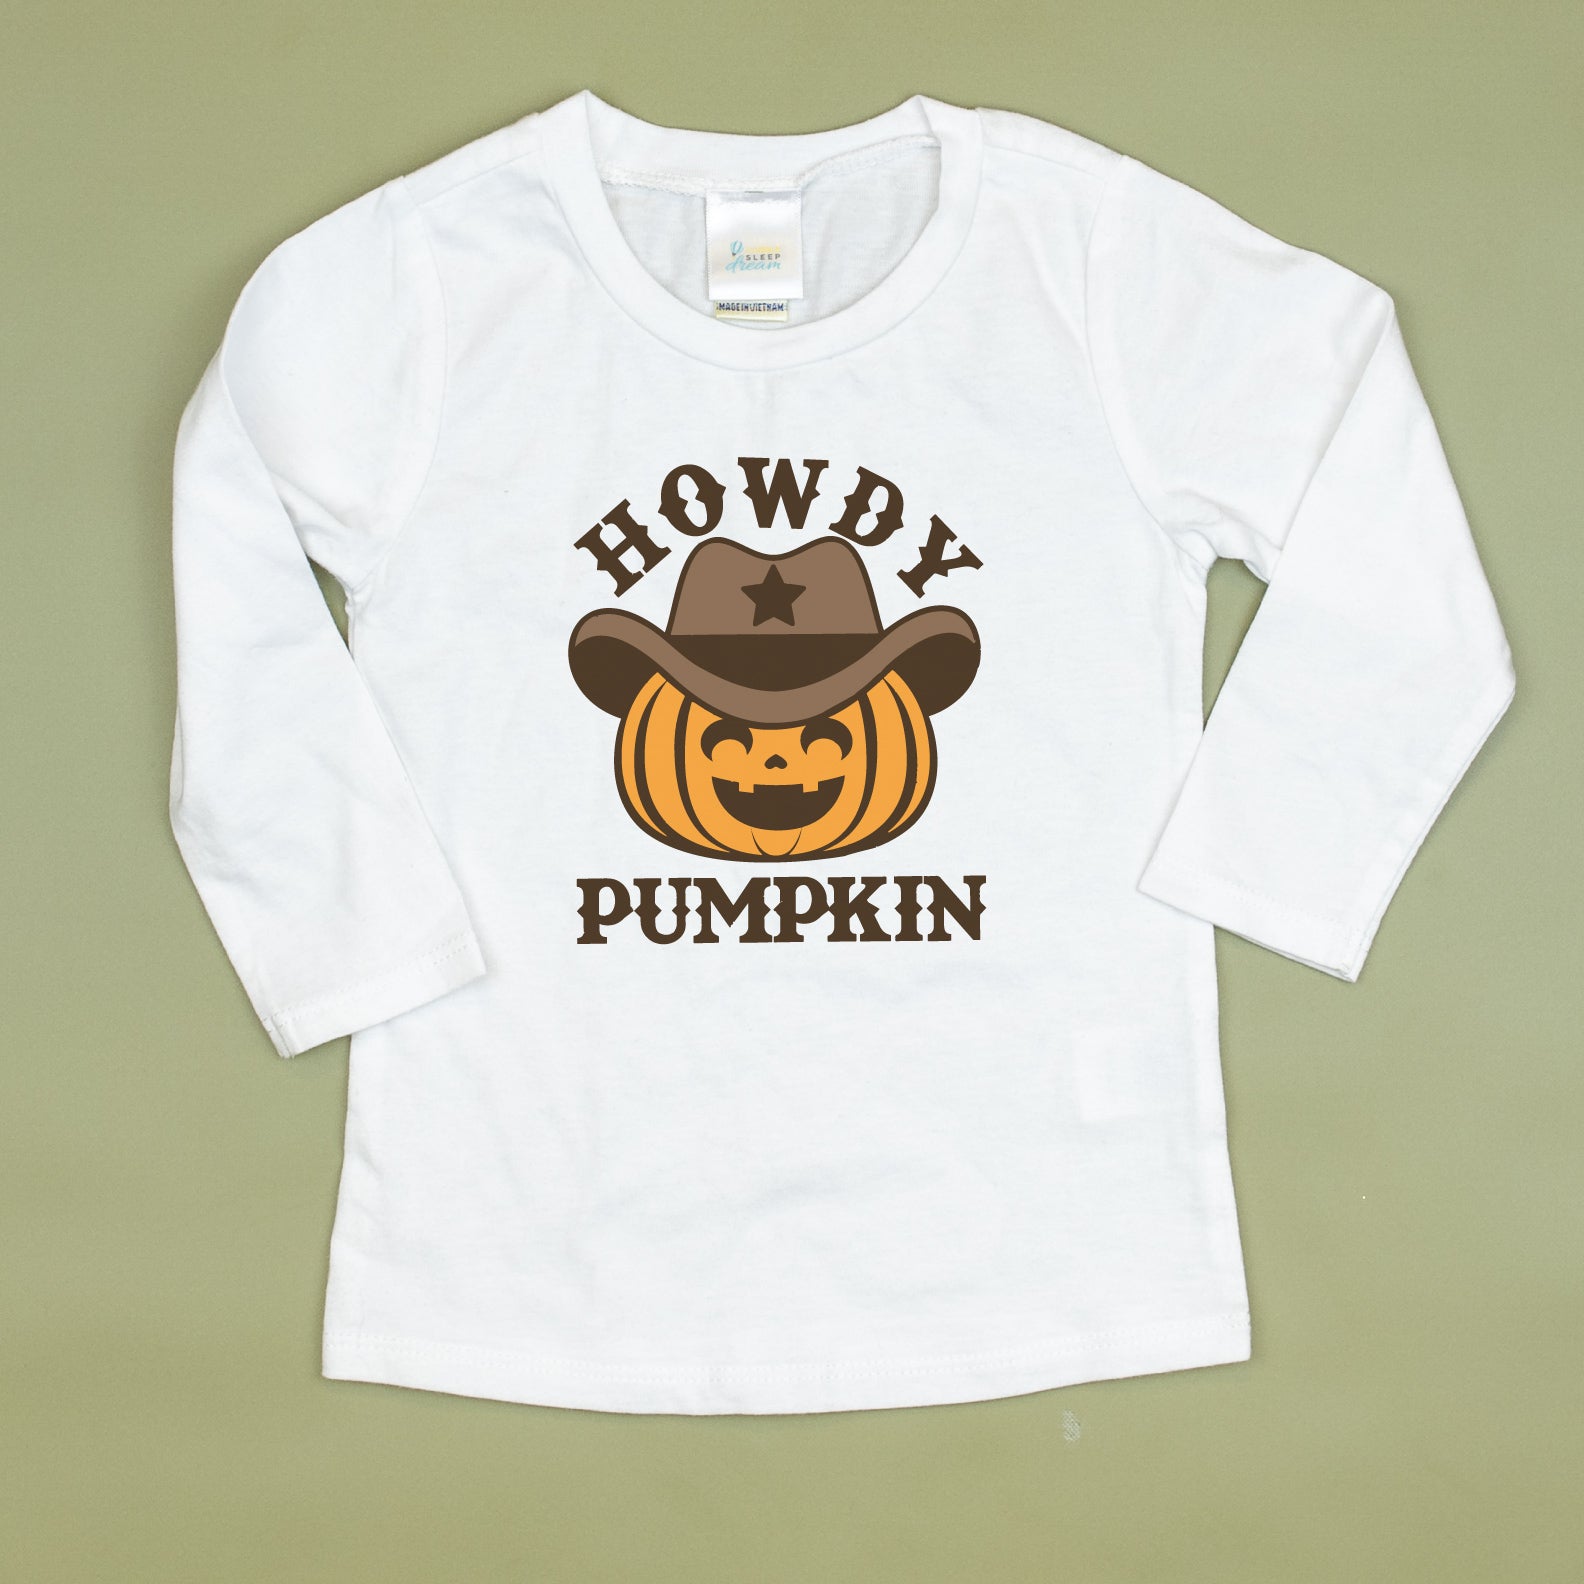 Cuddle Sleep Dream Howdy Pumpkin | White Tshirt